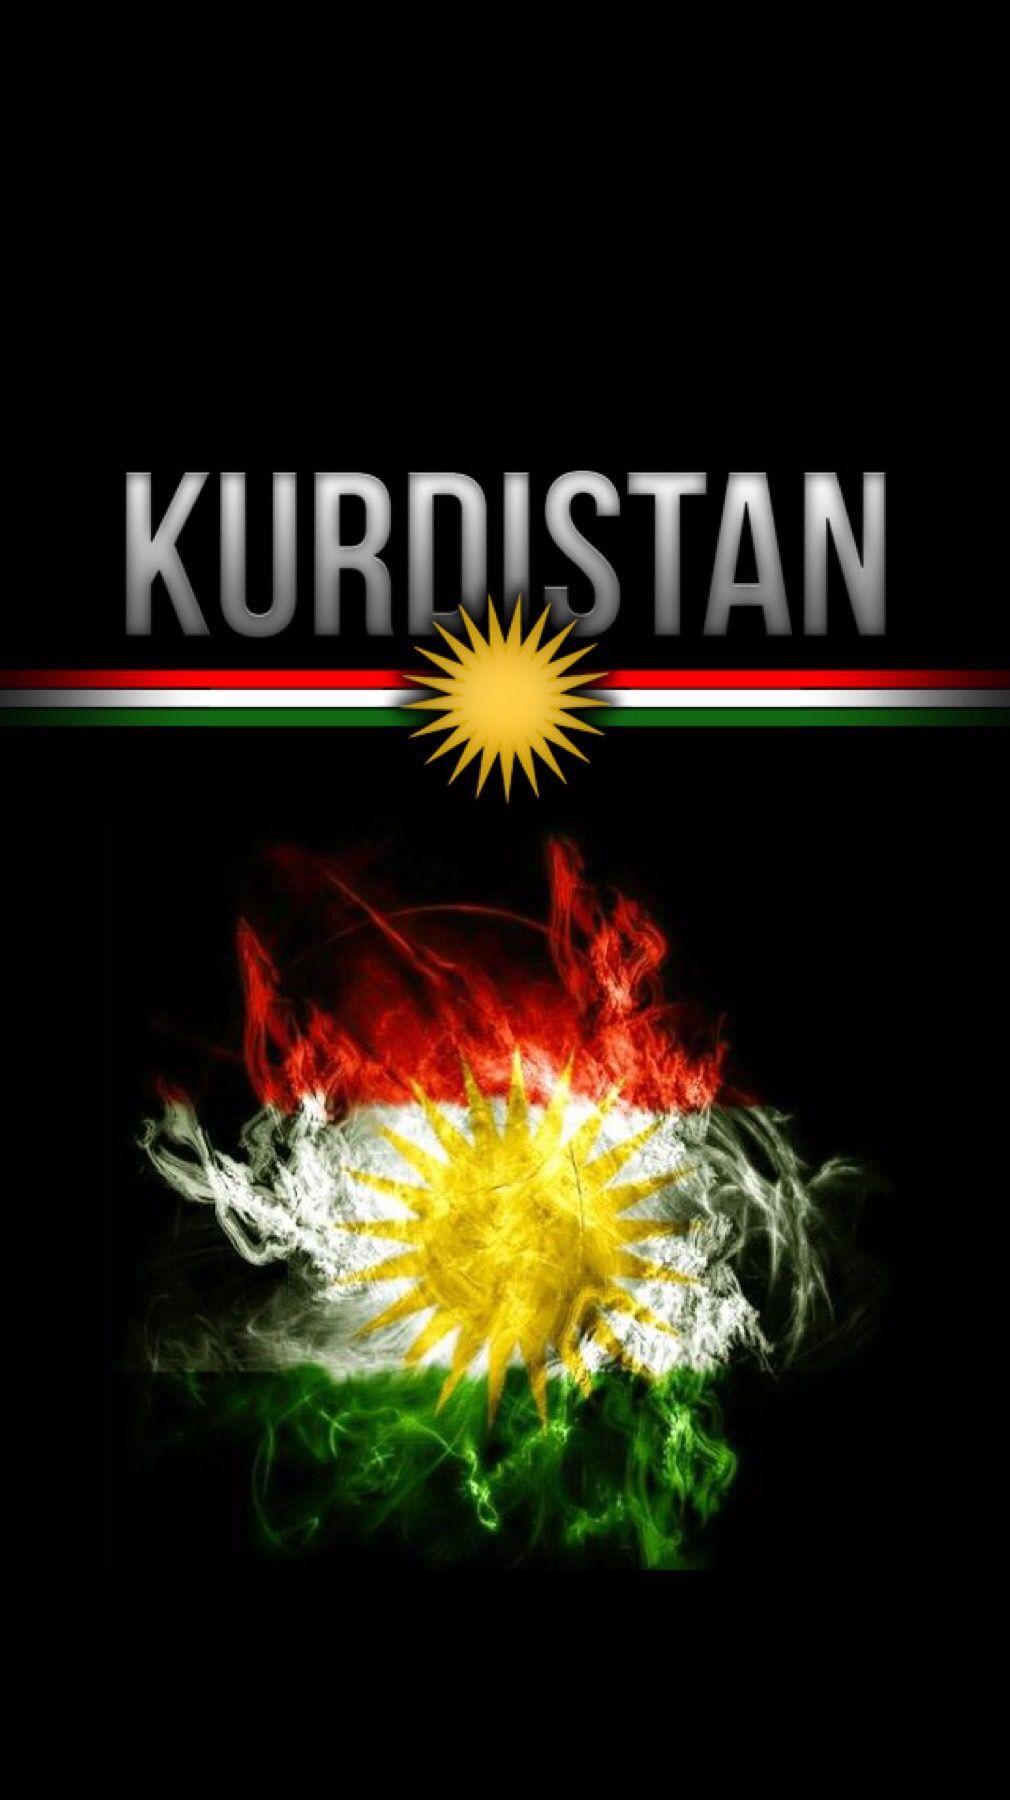 Details more than 73 kurdistan flag wallpaper best - 3tdesign.edu.vn